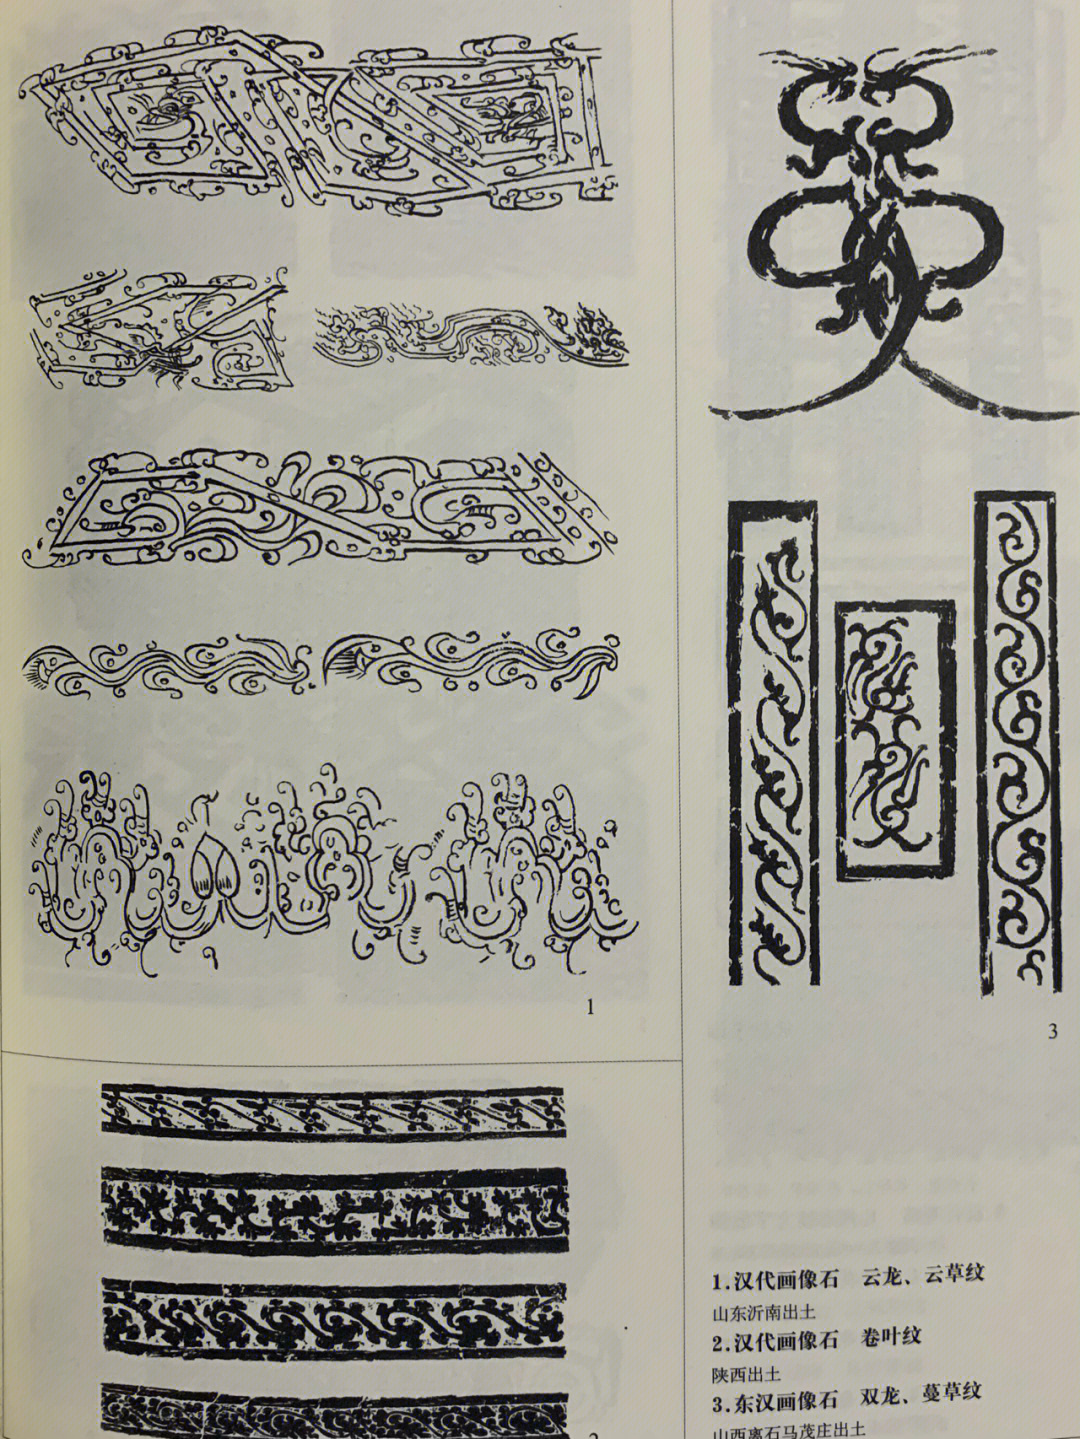 原始时期的植物纹样图片